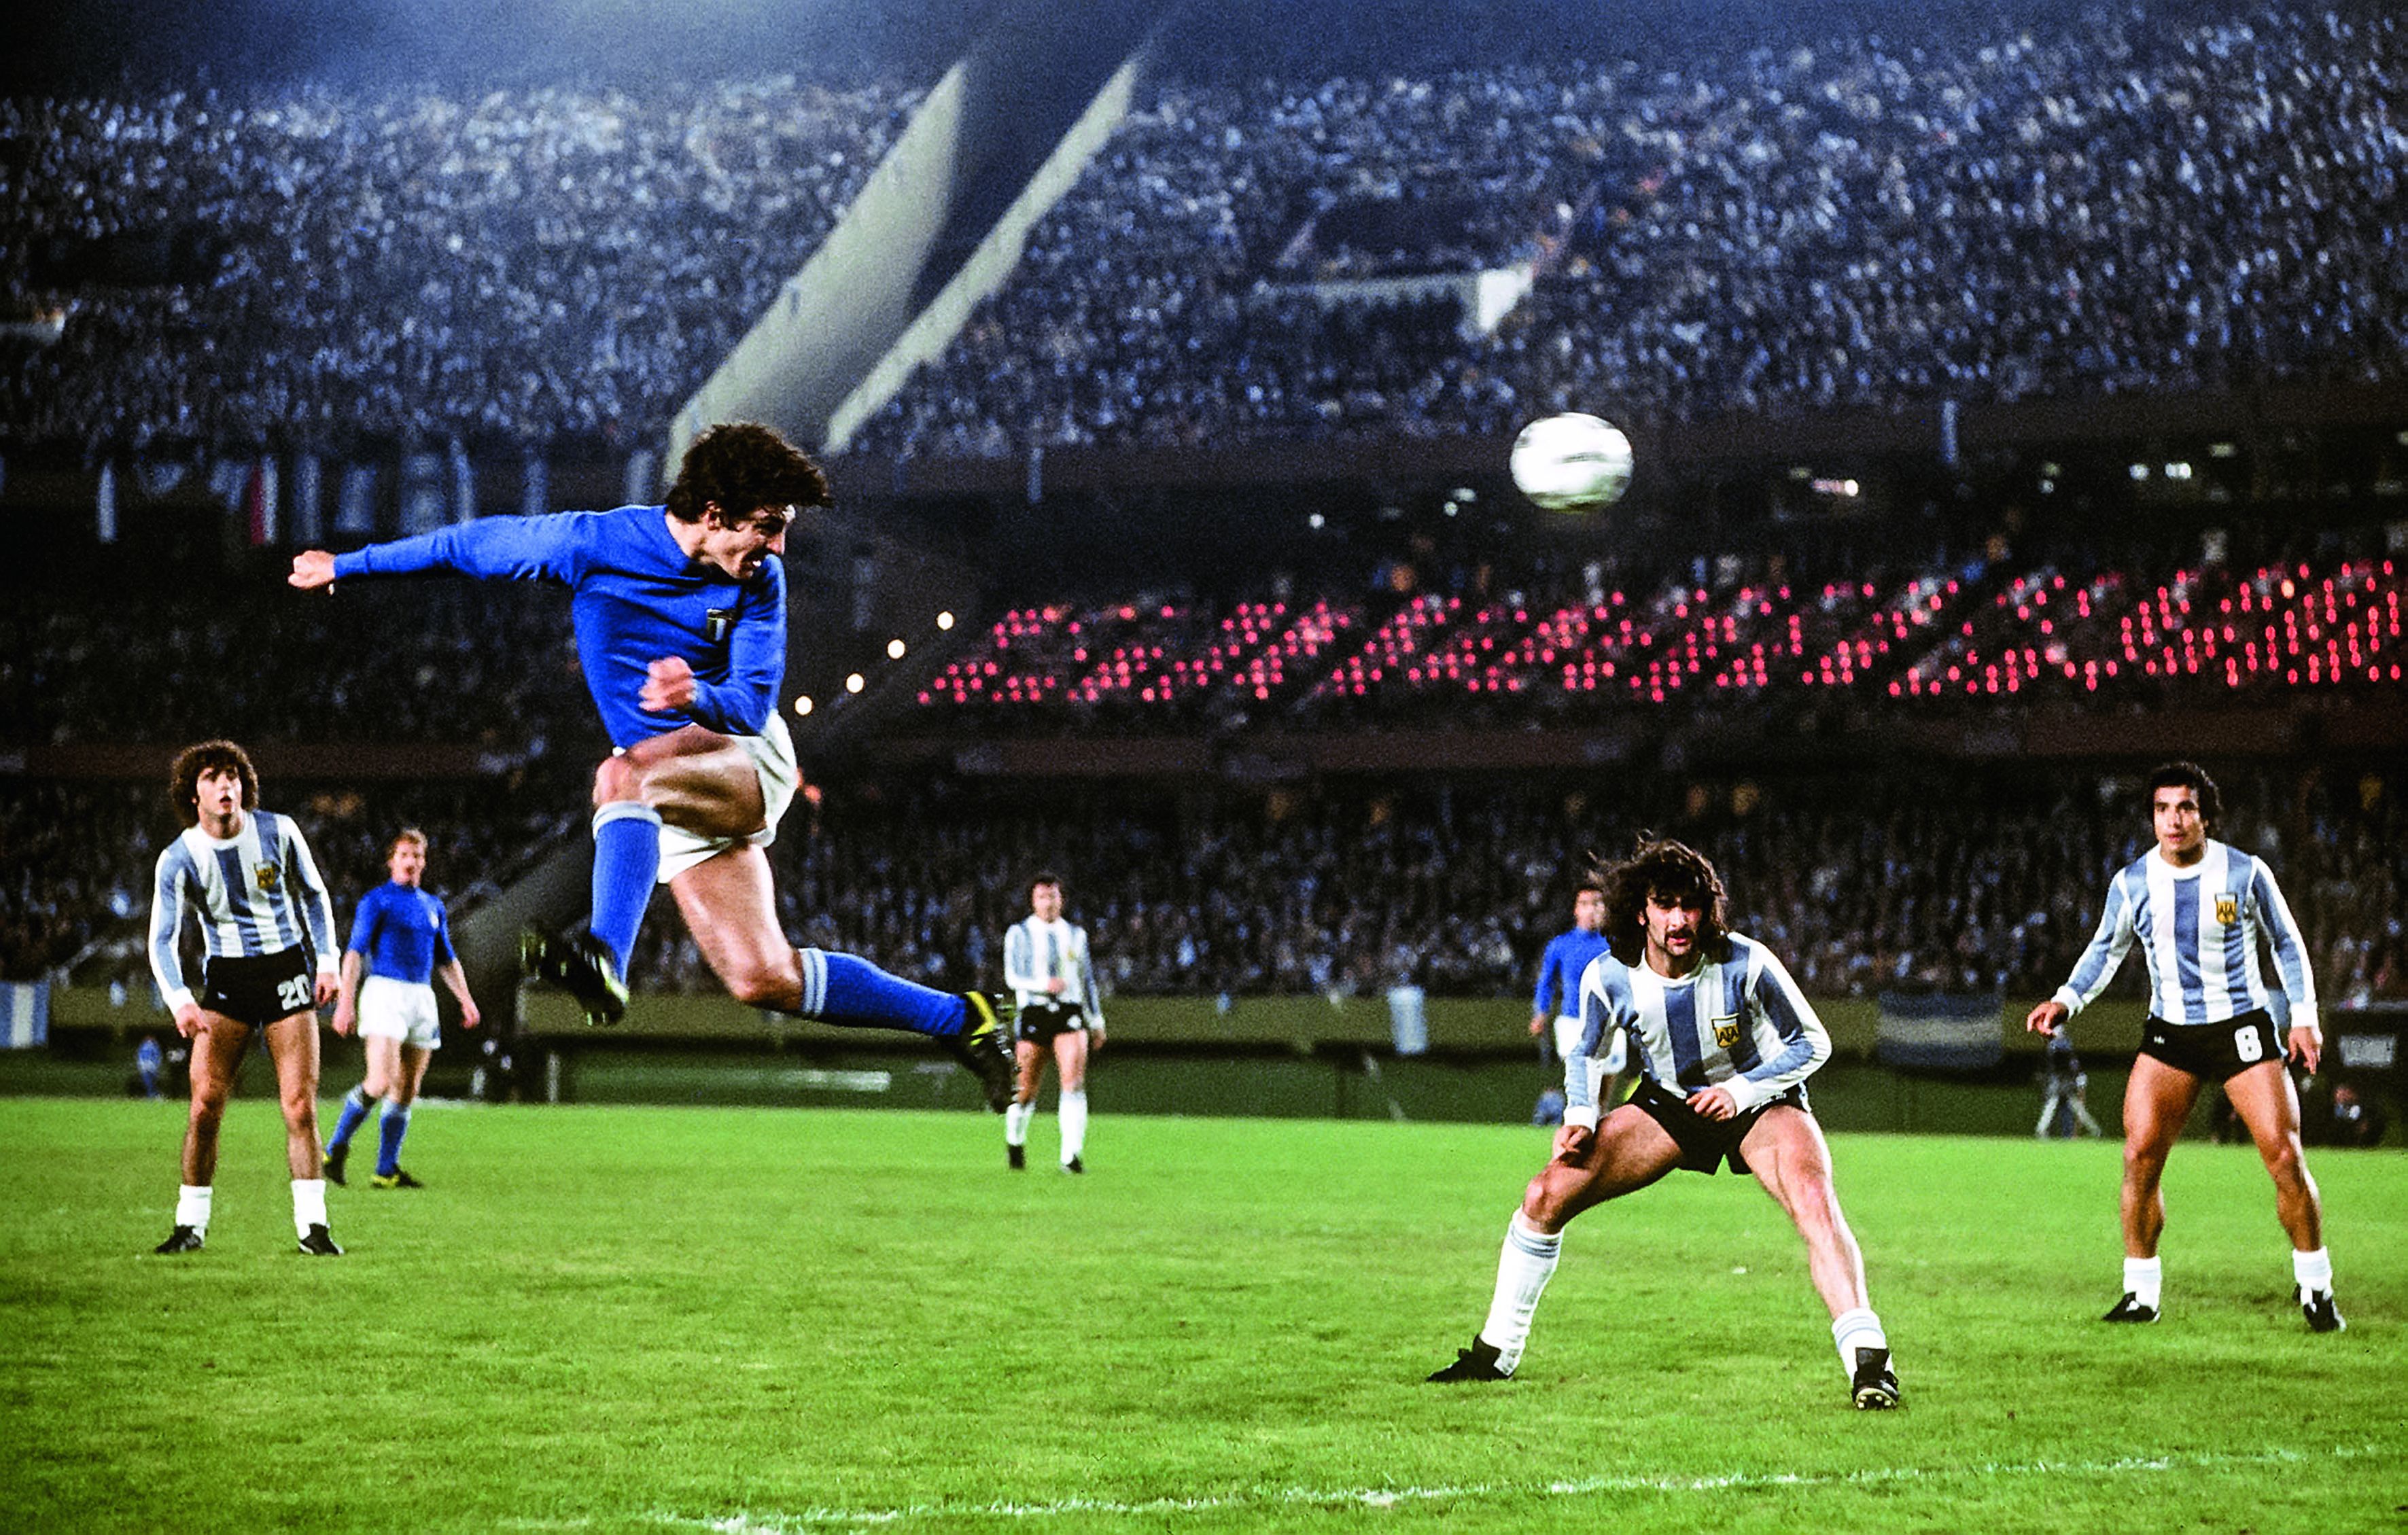 The beautiful game. Il calcio negli anni &#8217;70. Gallery amarcord - immagine 6